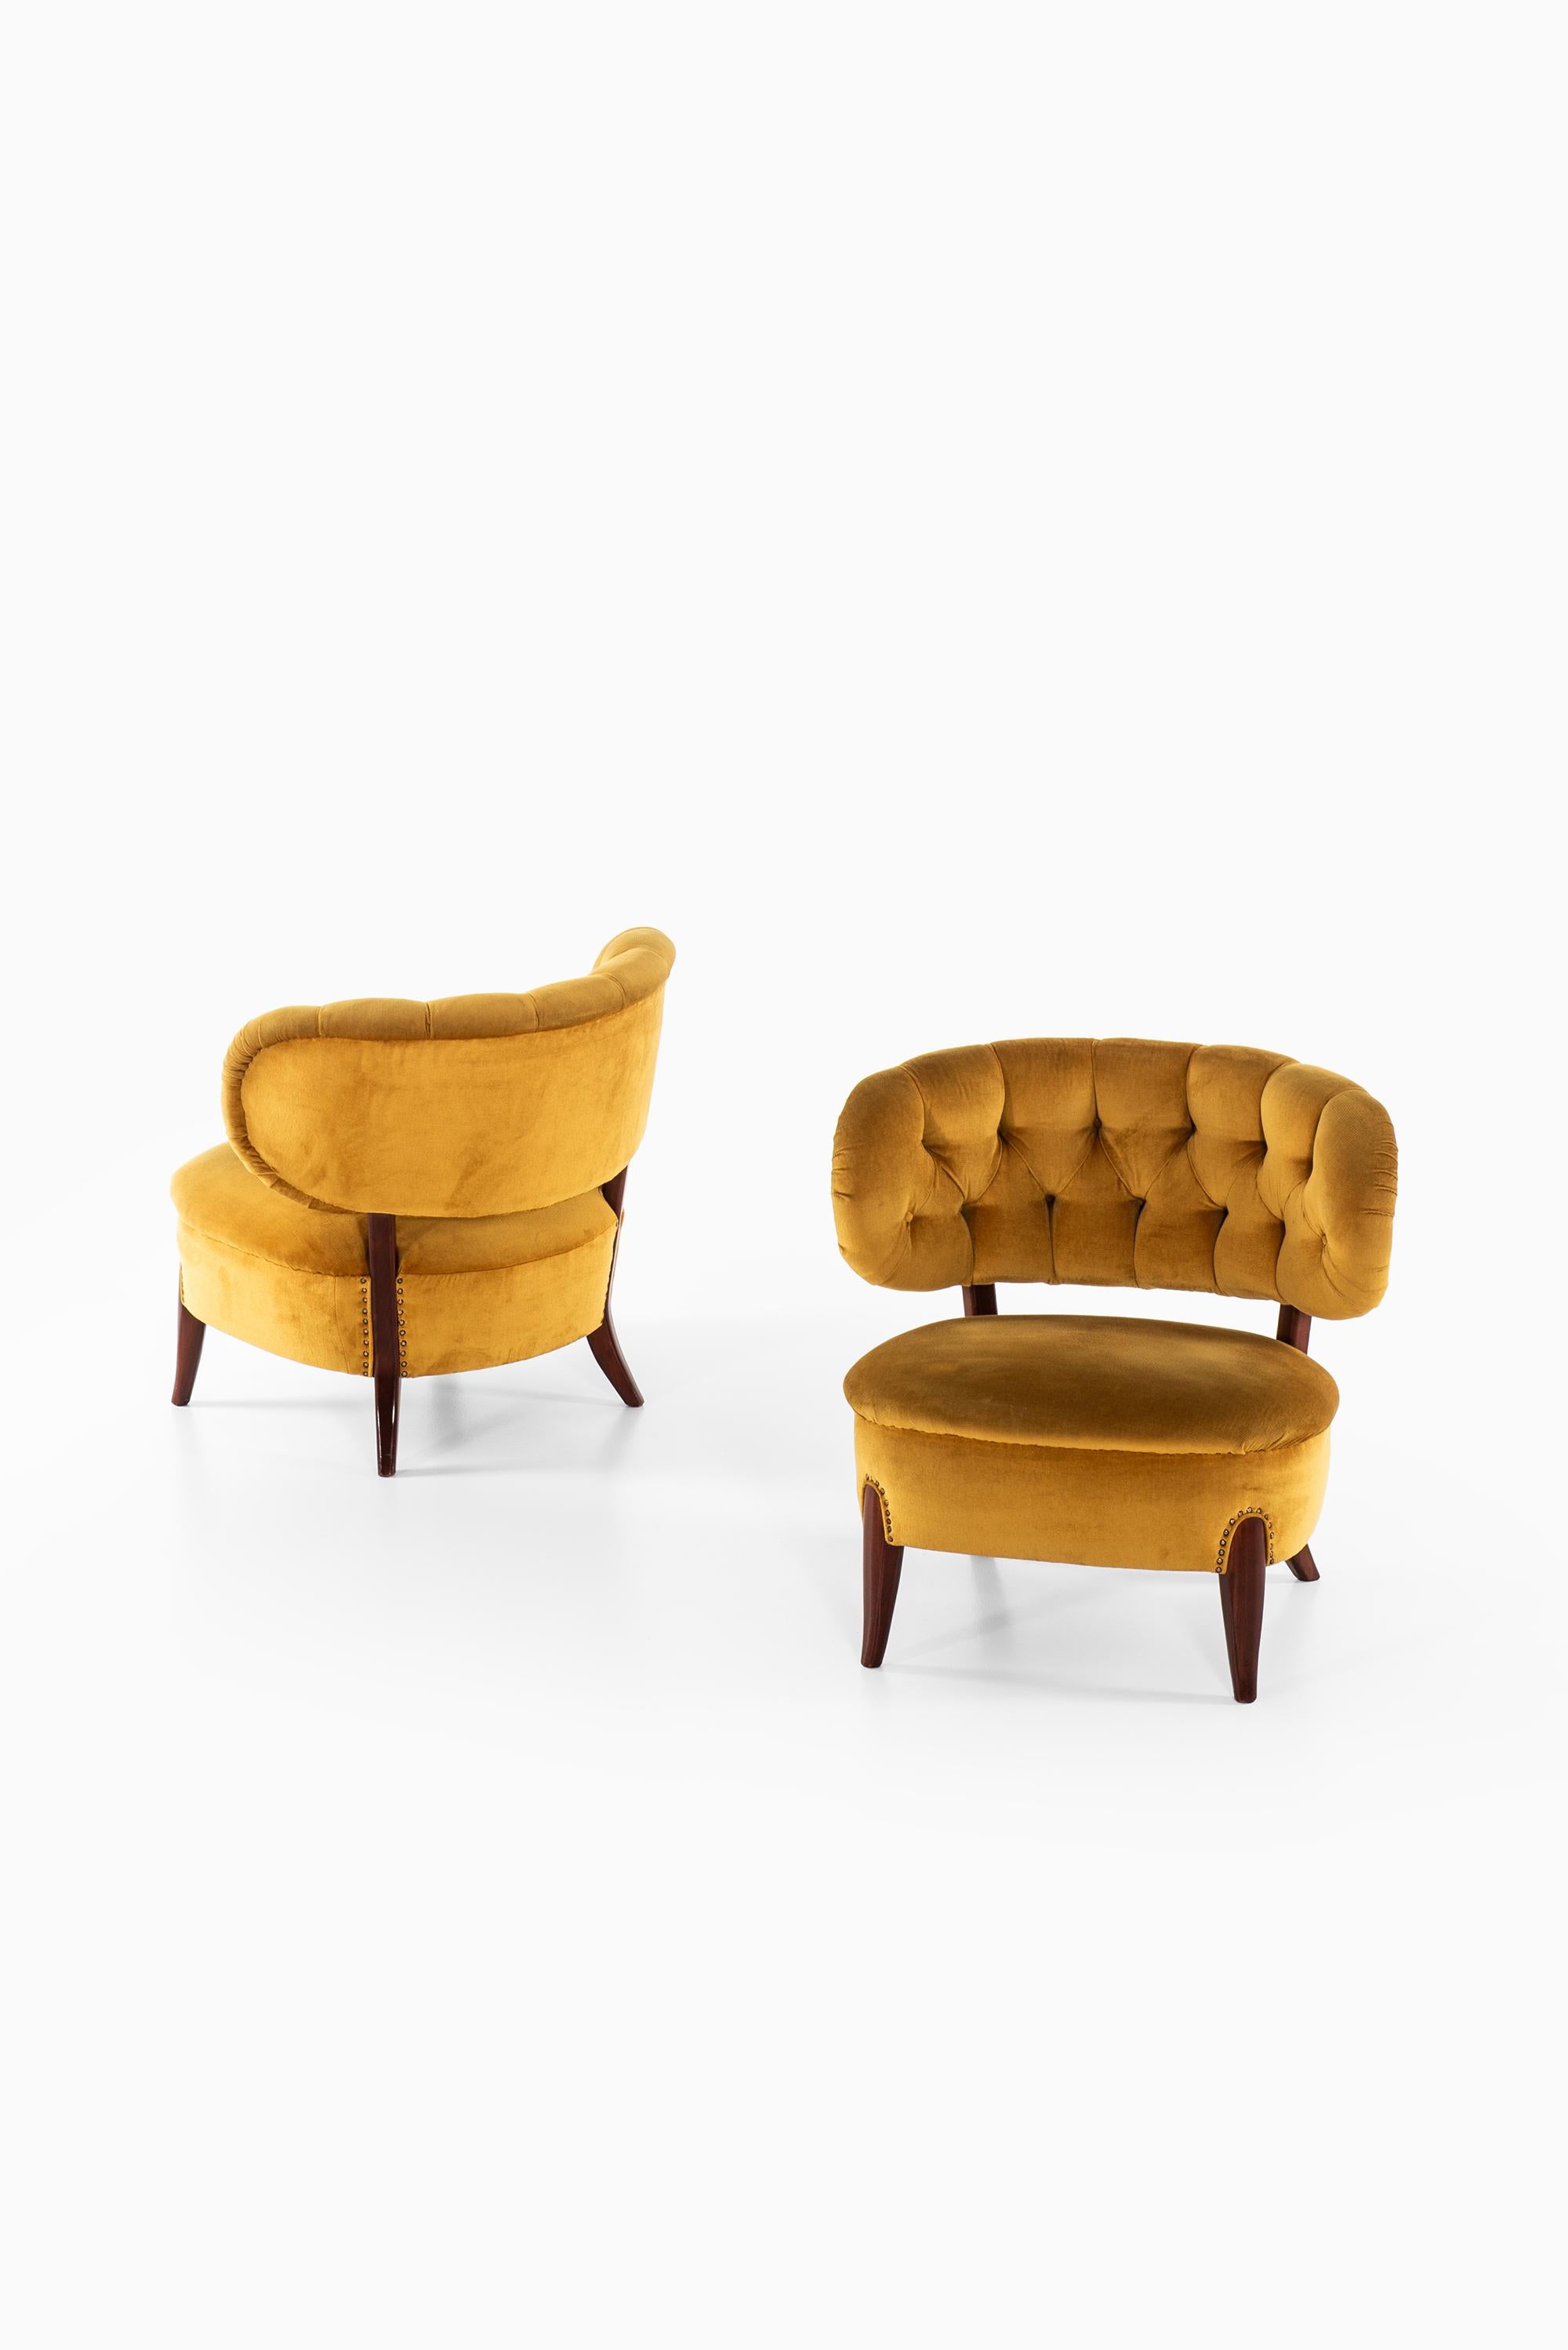 Seltenes Paar Sessel Modell Schulz entworfen von Otto Schulz. Produziert von Boet in Schweden.